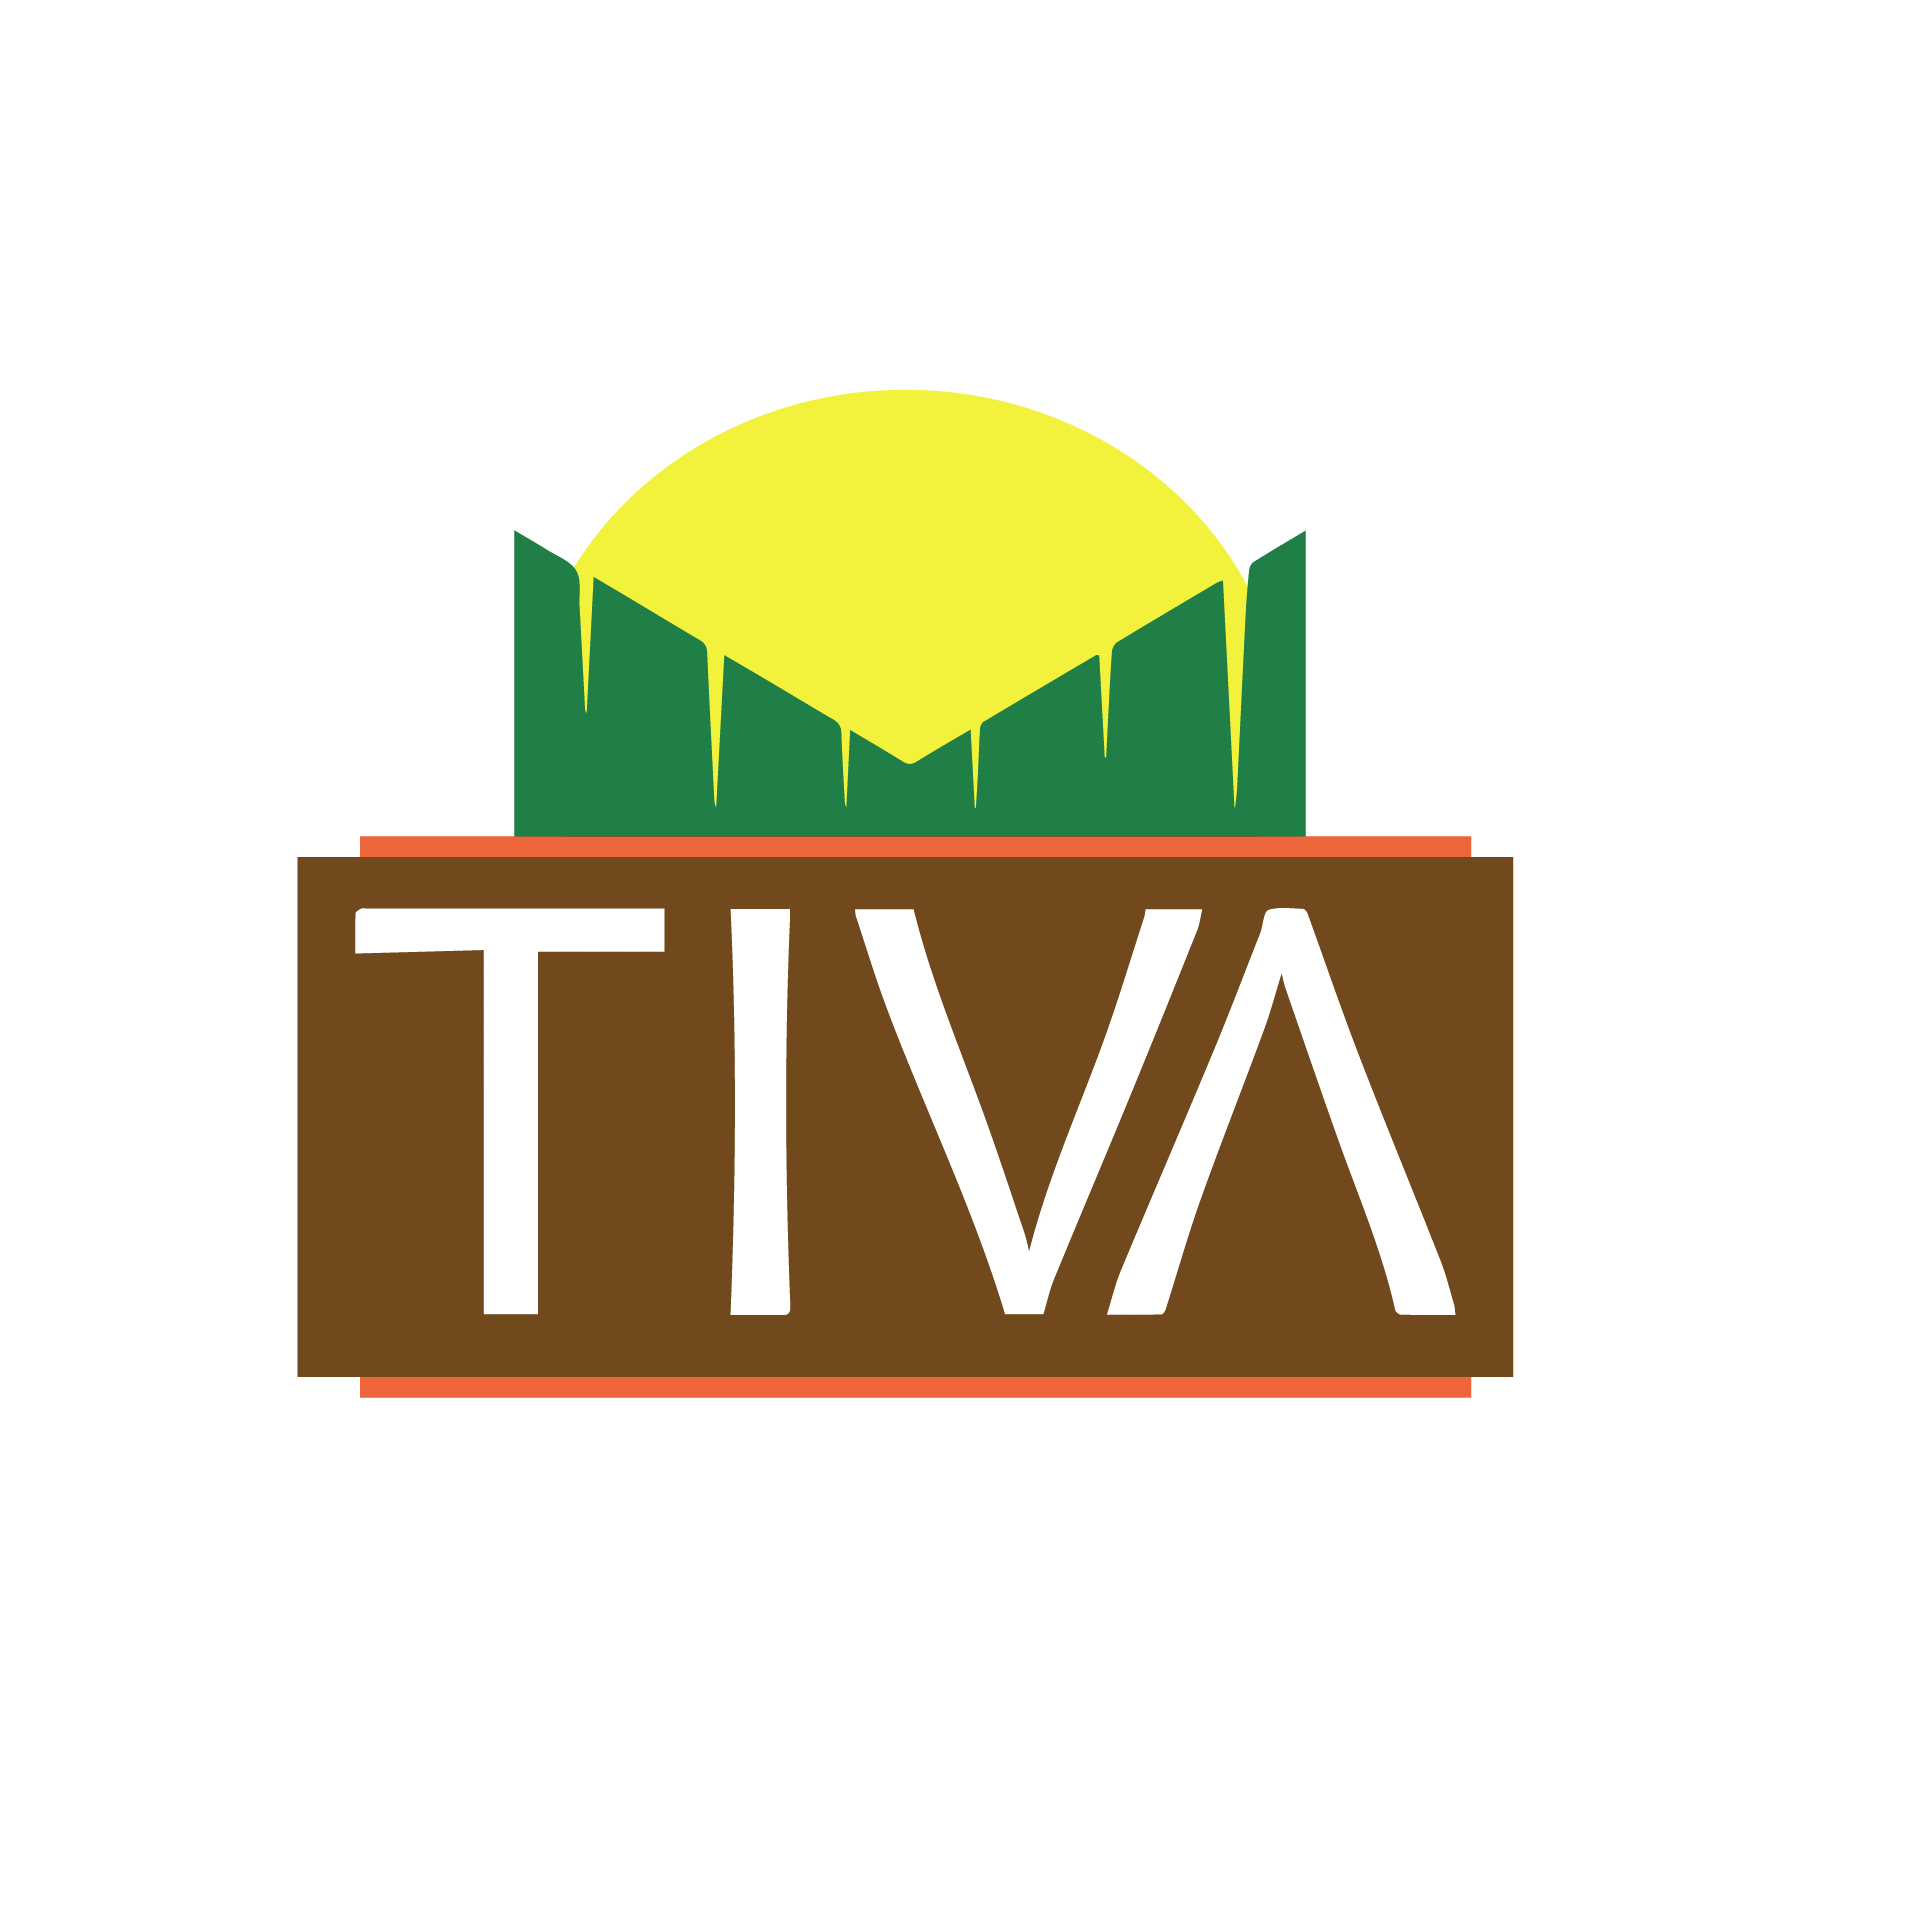 TIVA